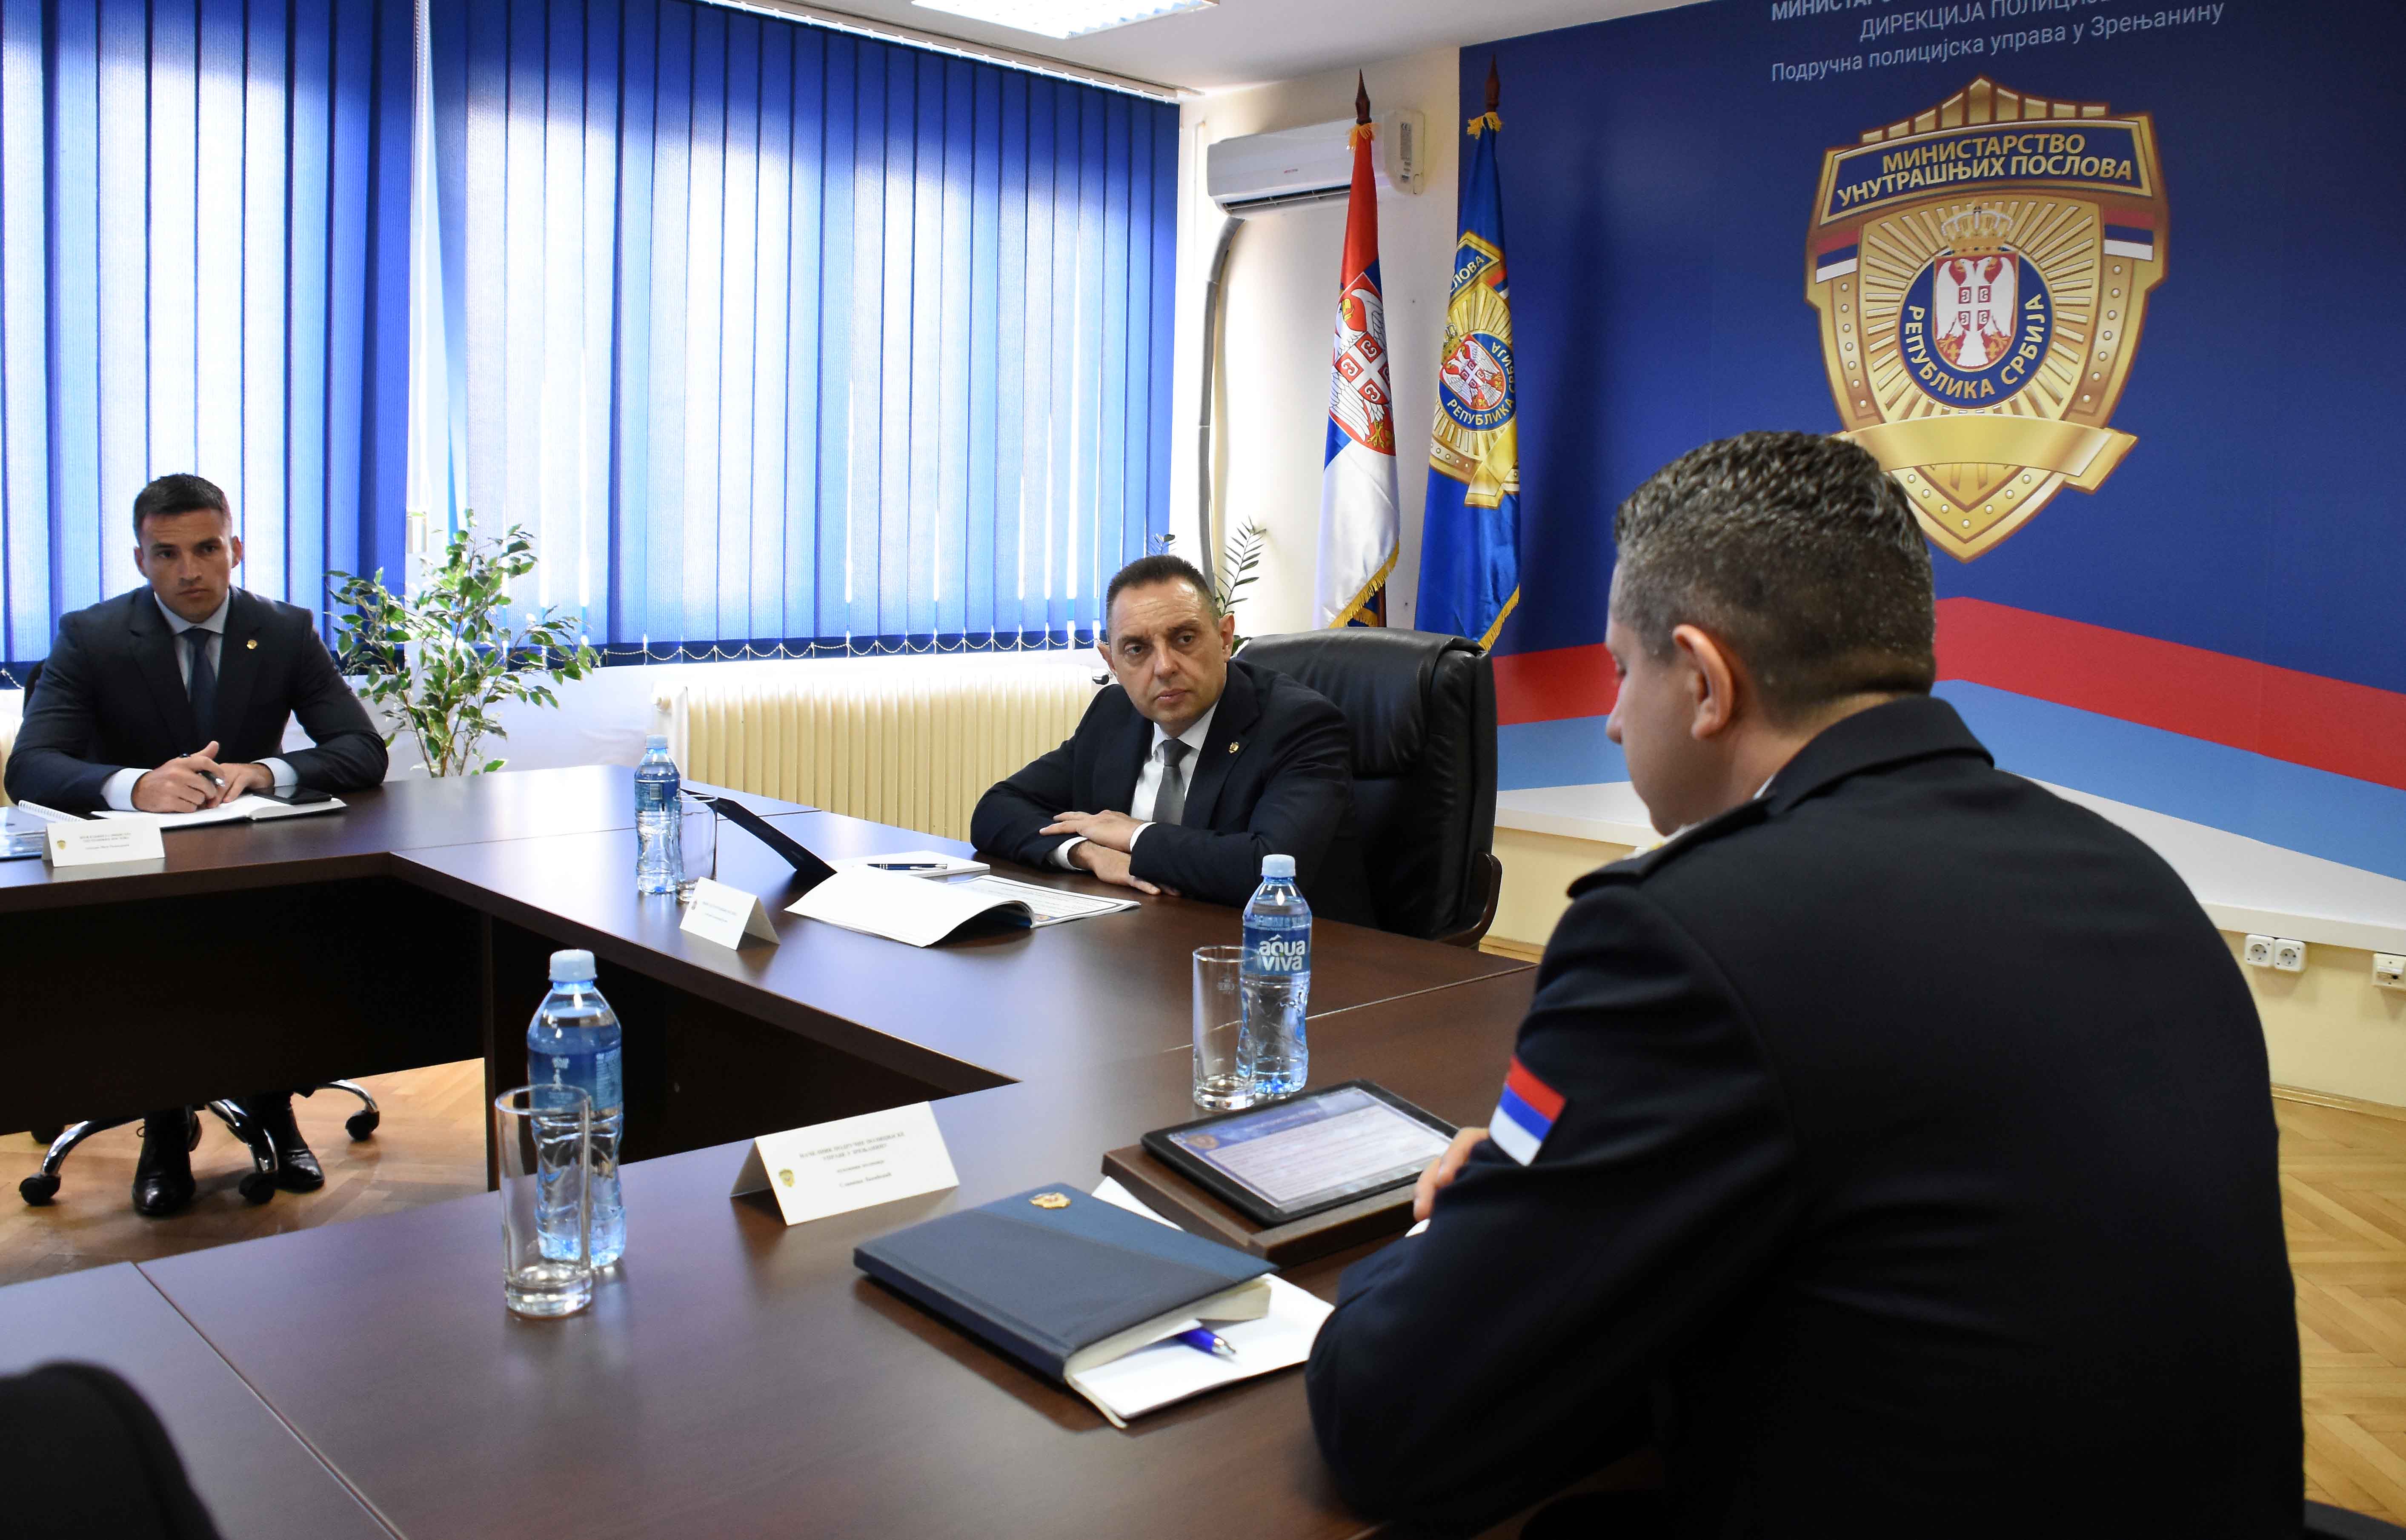 Ministar Vulin: Uspeh našeg rada meri se osećajem sigurnosti kod građana